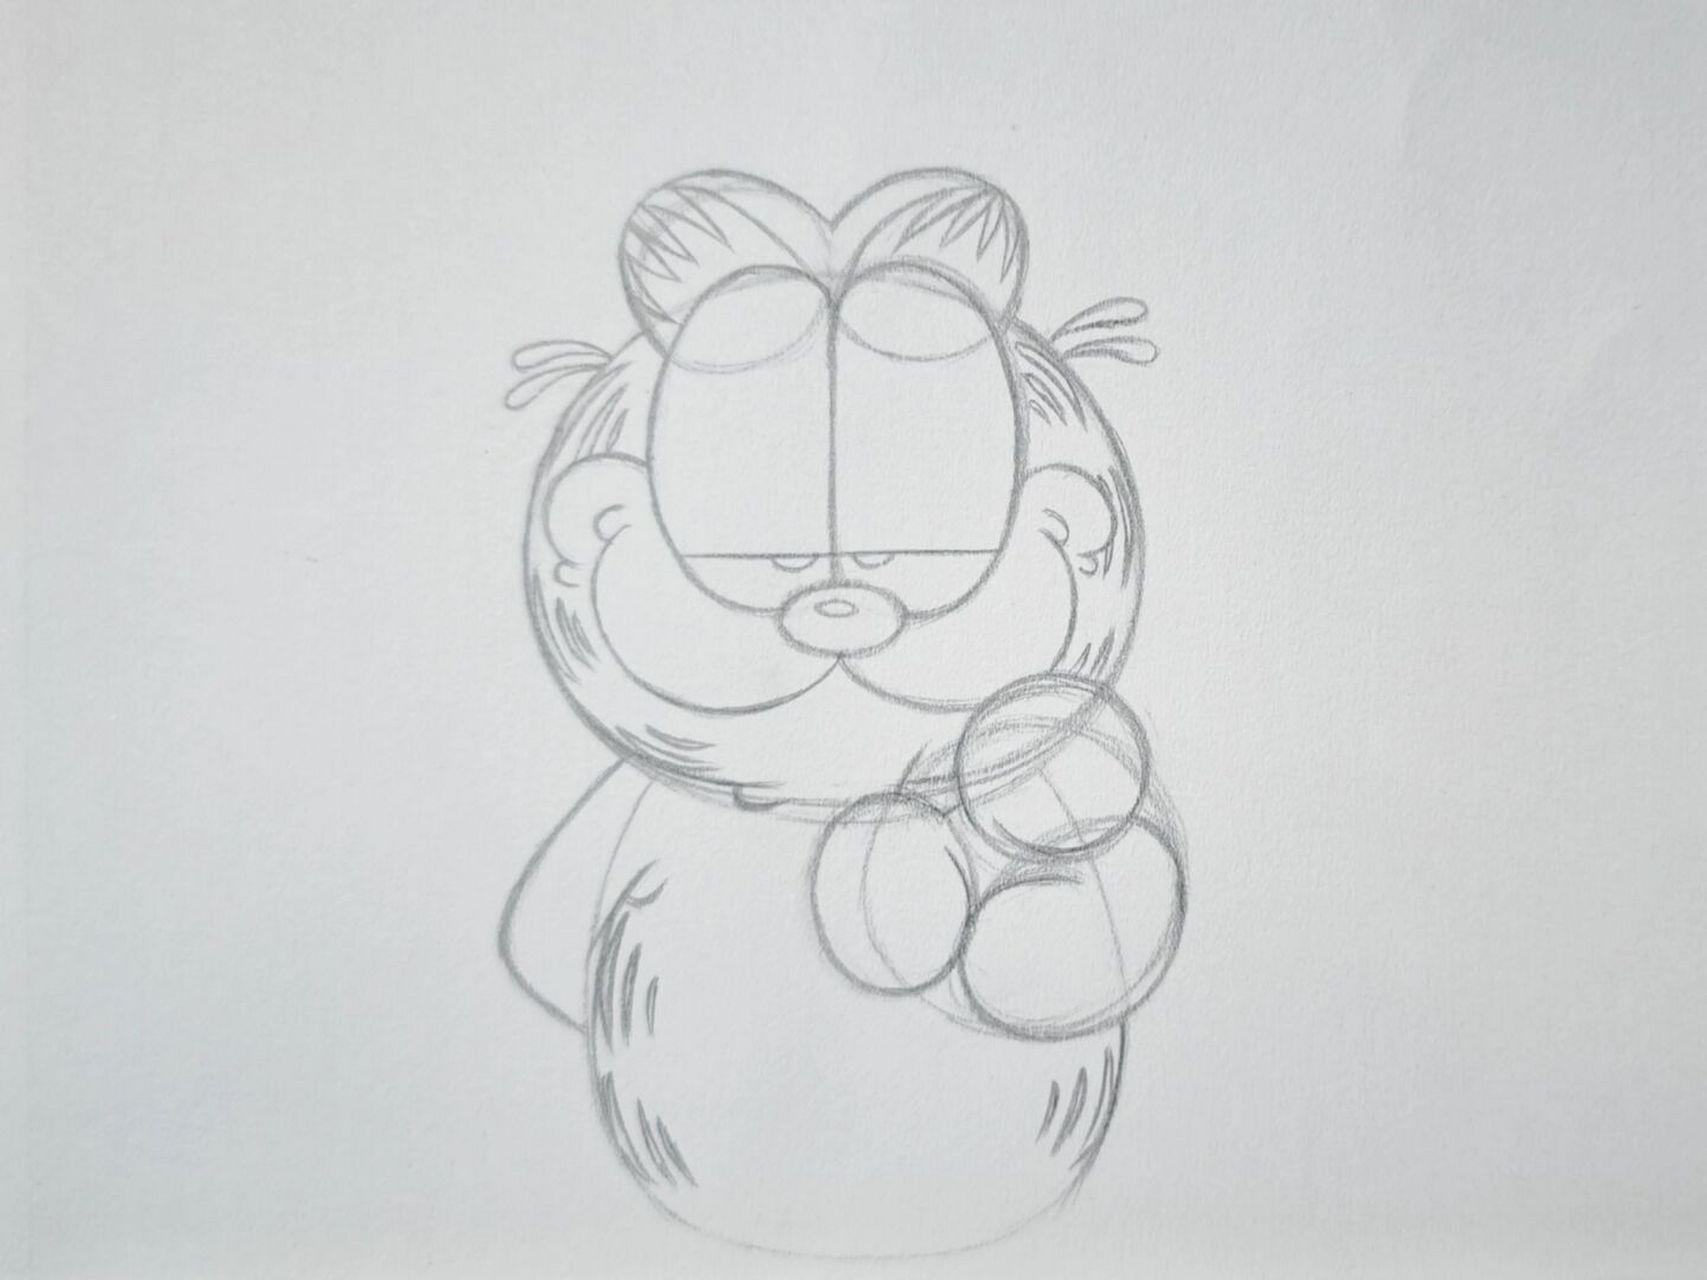 加菲猫简笔画简单图片